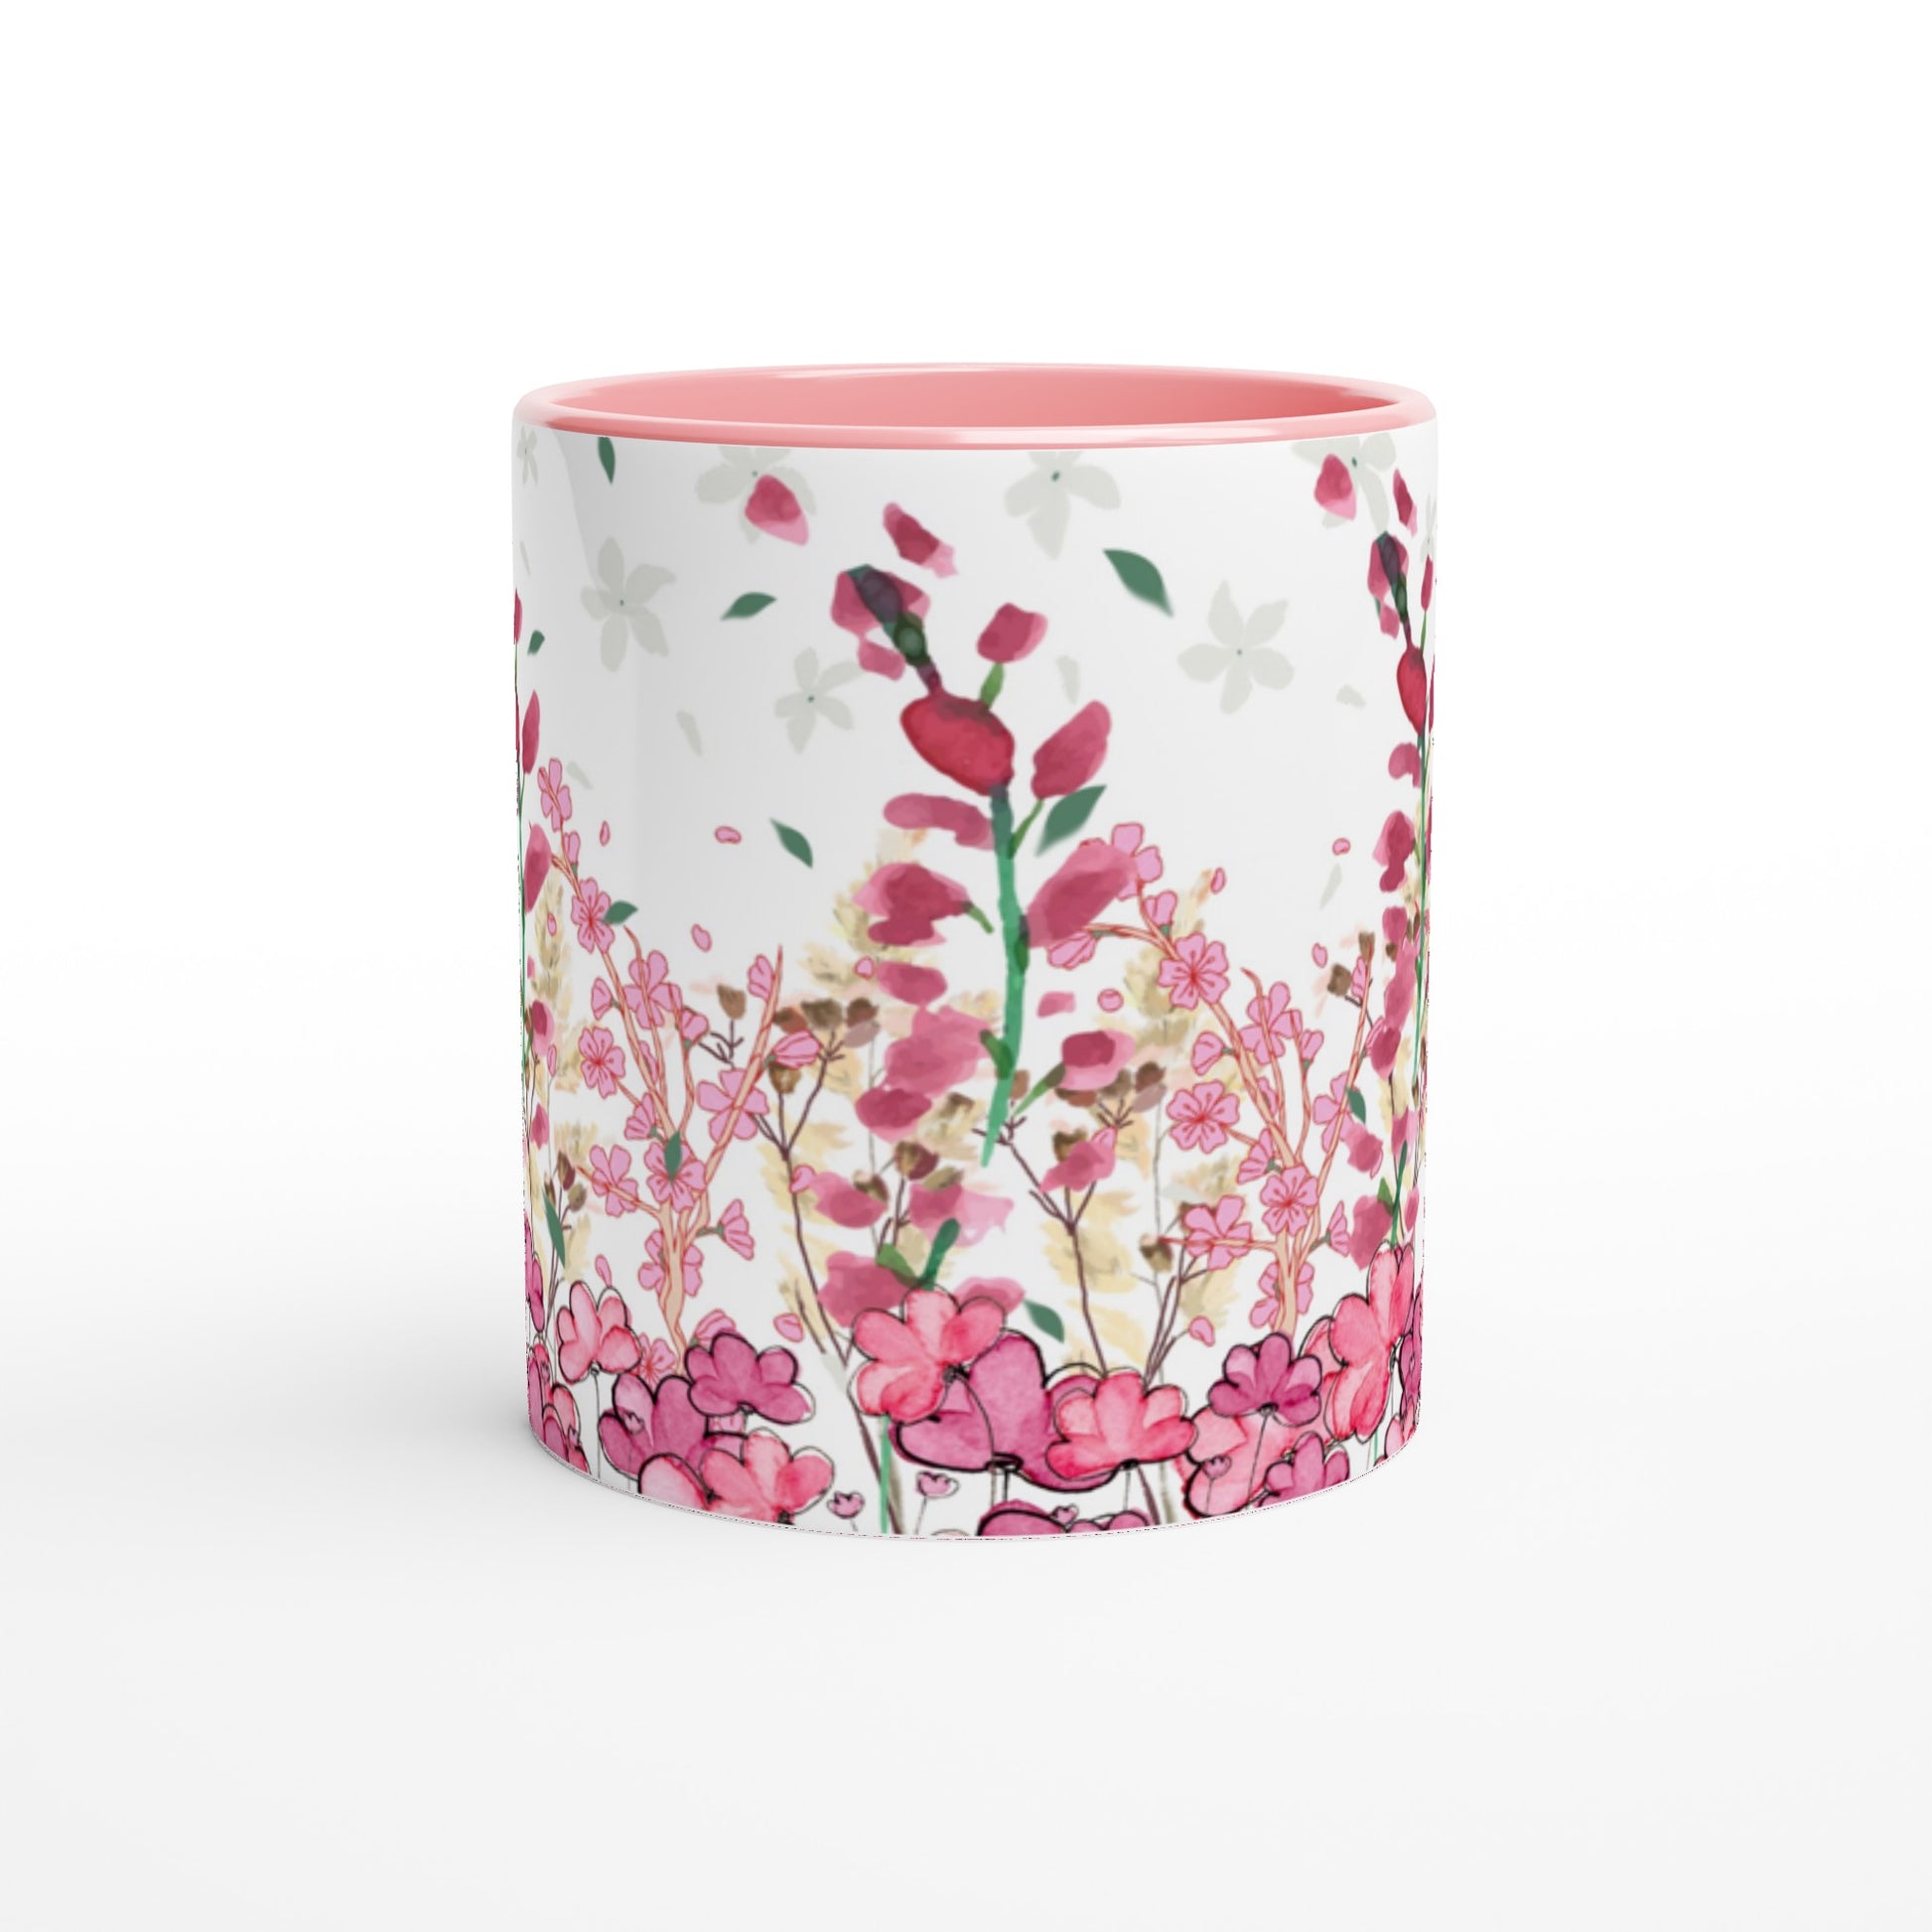 Bonita taza con flores rosadas